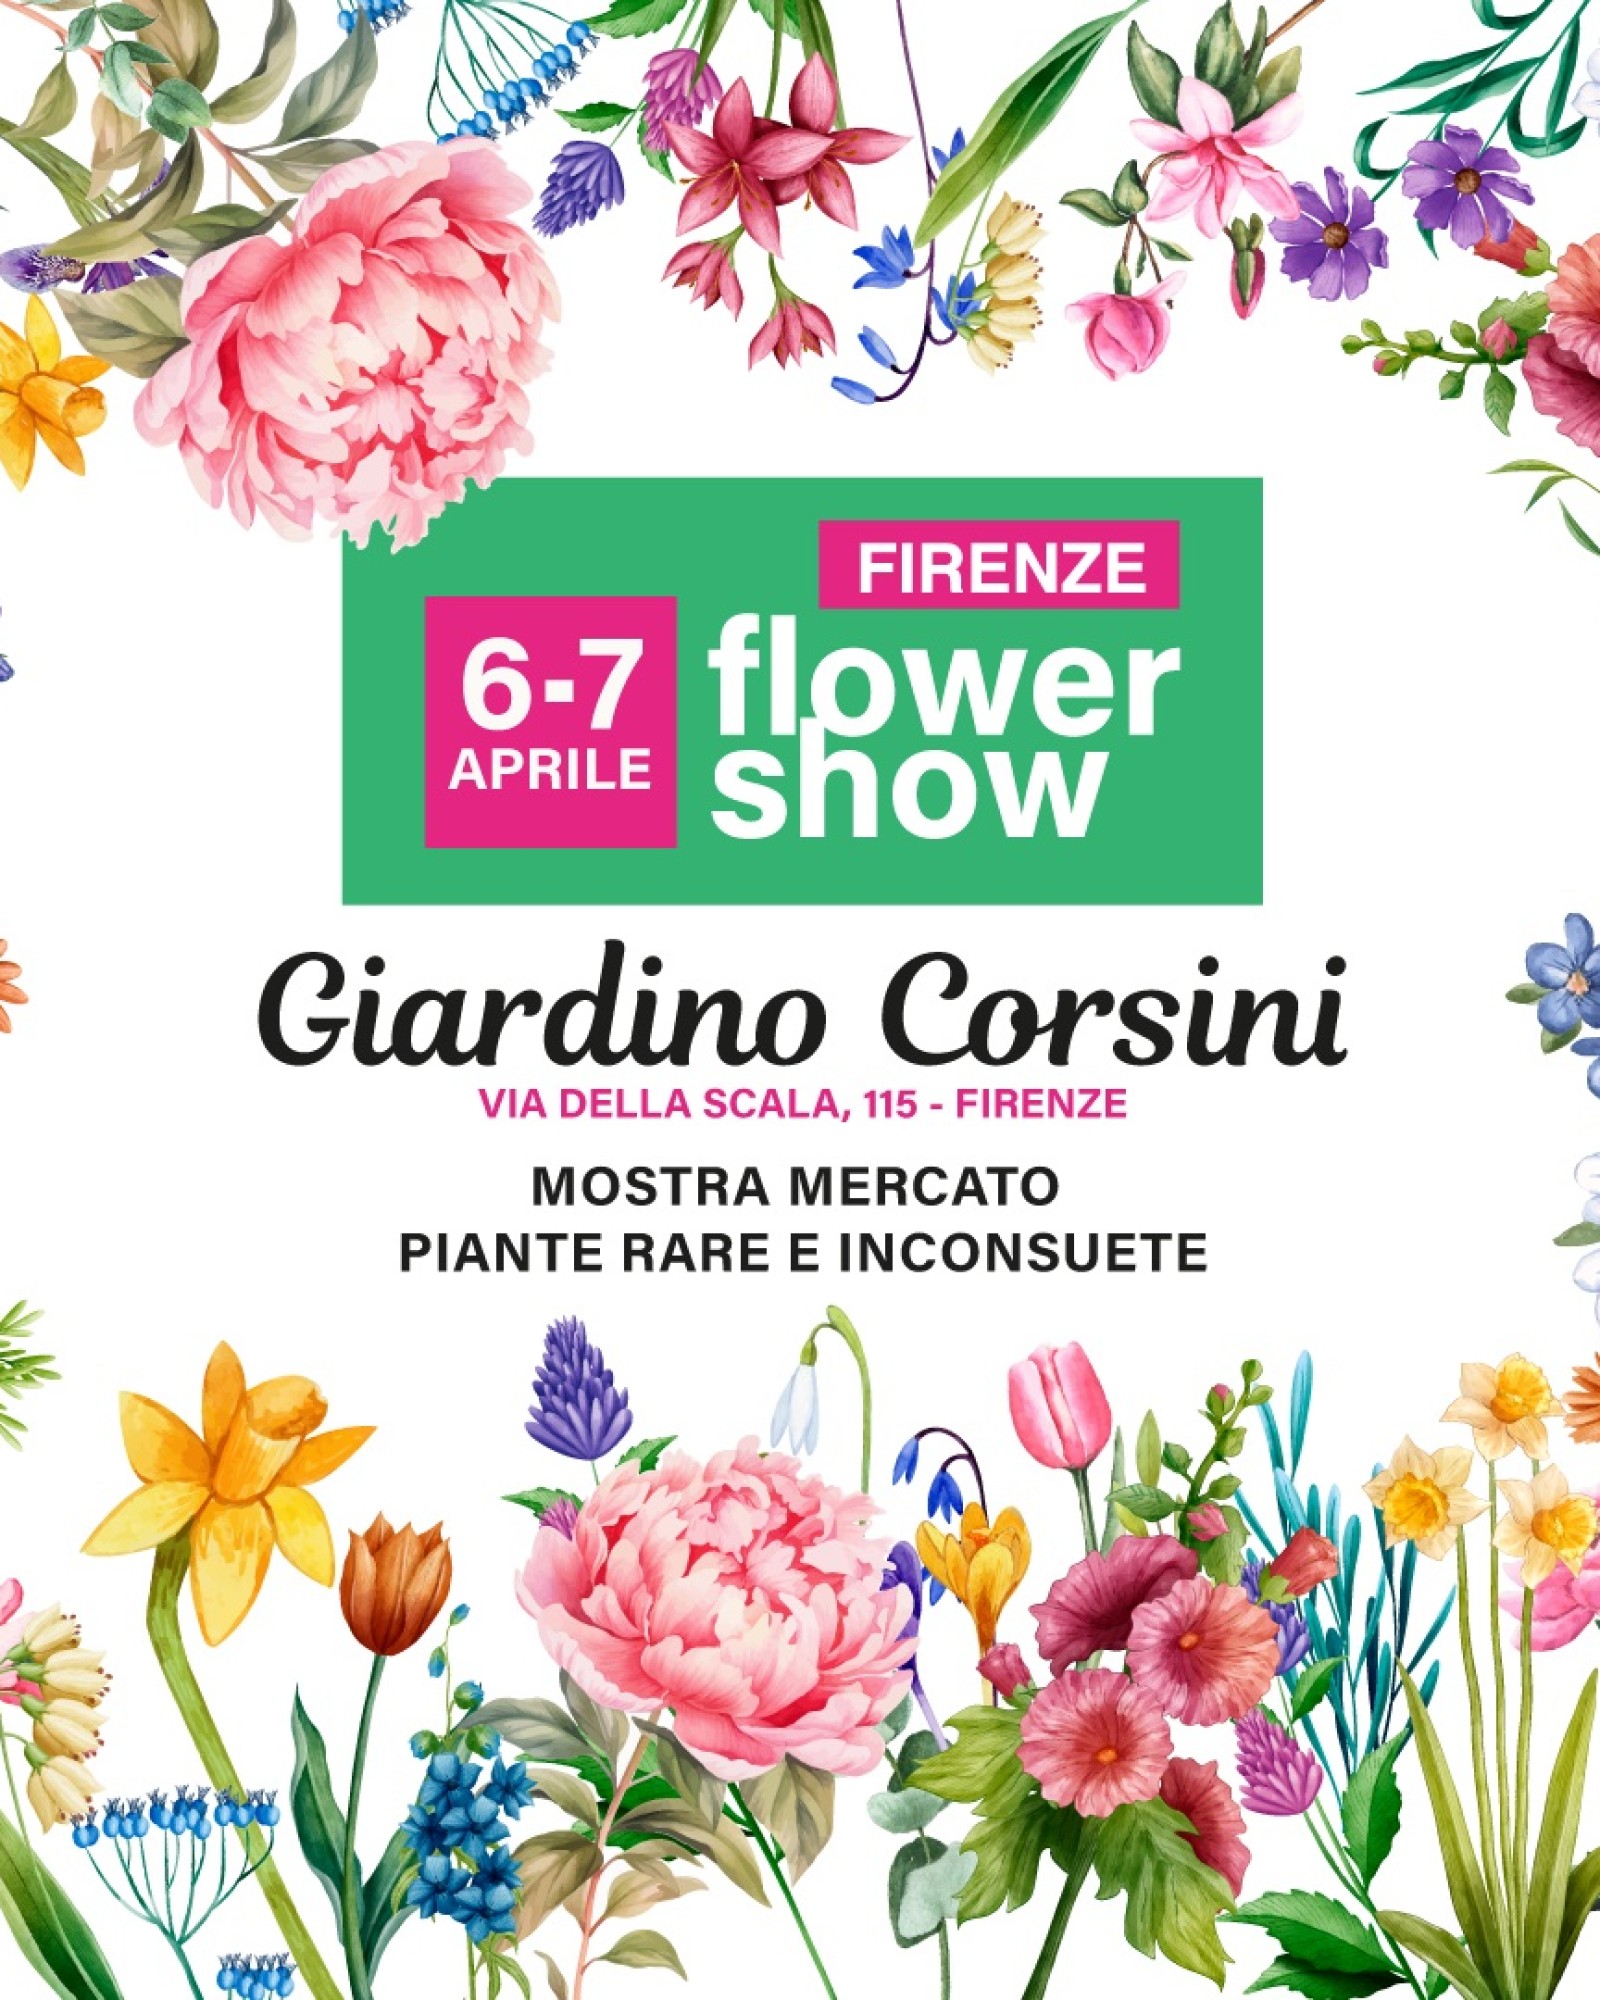 Torna Firenze Flower Show, la presentazione mercoledì 3 aprile alle 12